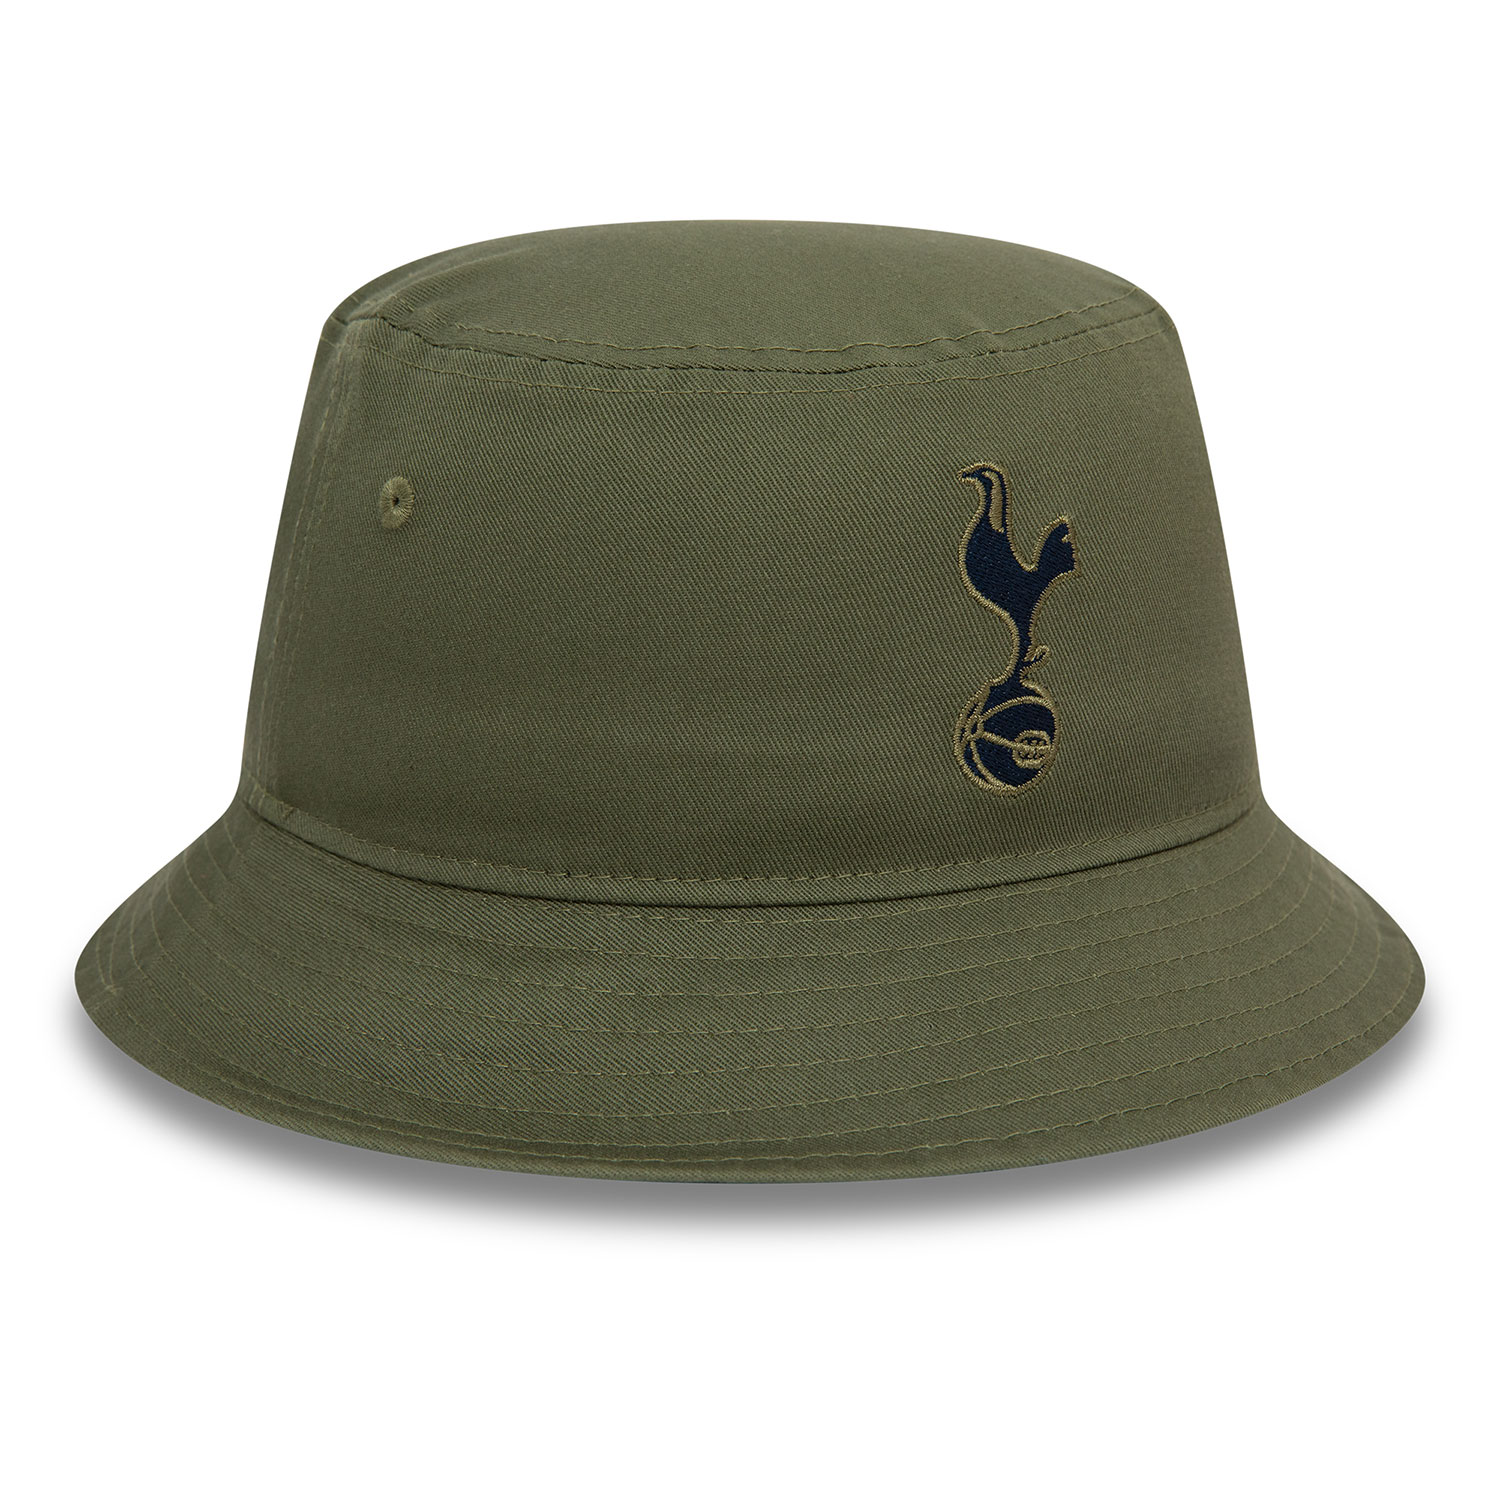 Tottenham Hotspur FC Dark Green Bucket Hat